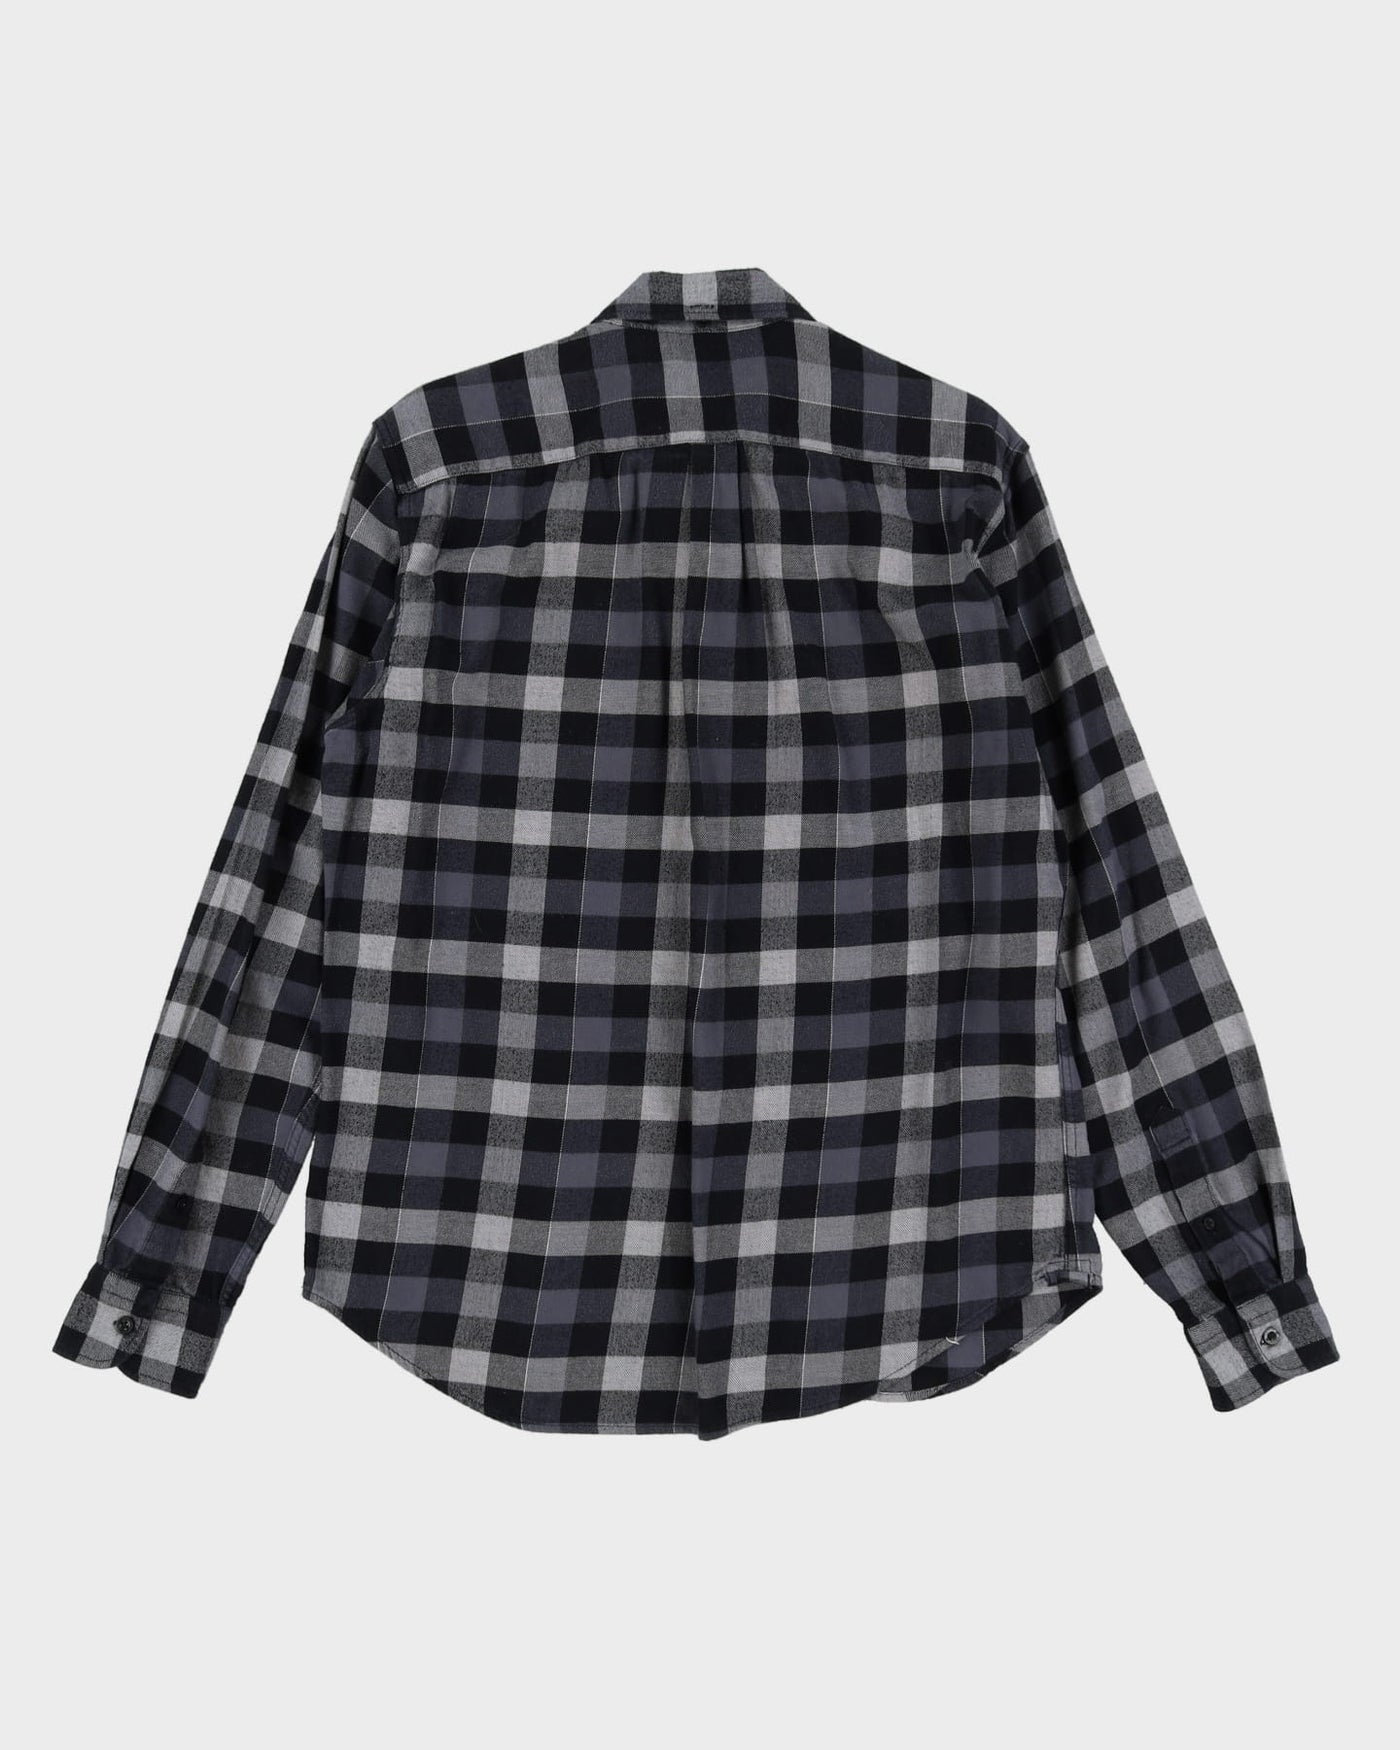 Levi's Dark Flannel Shirt - L